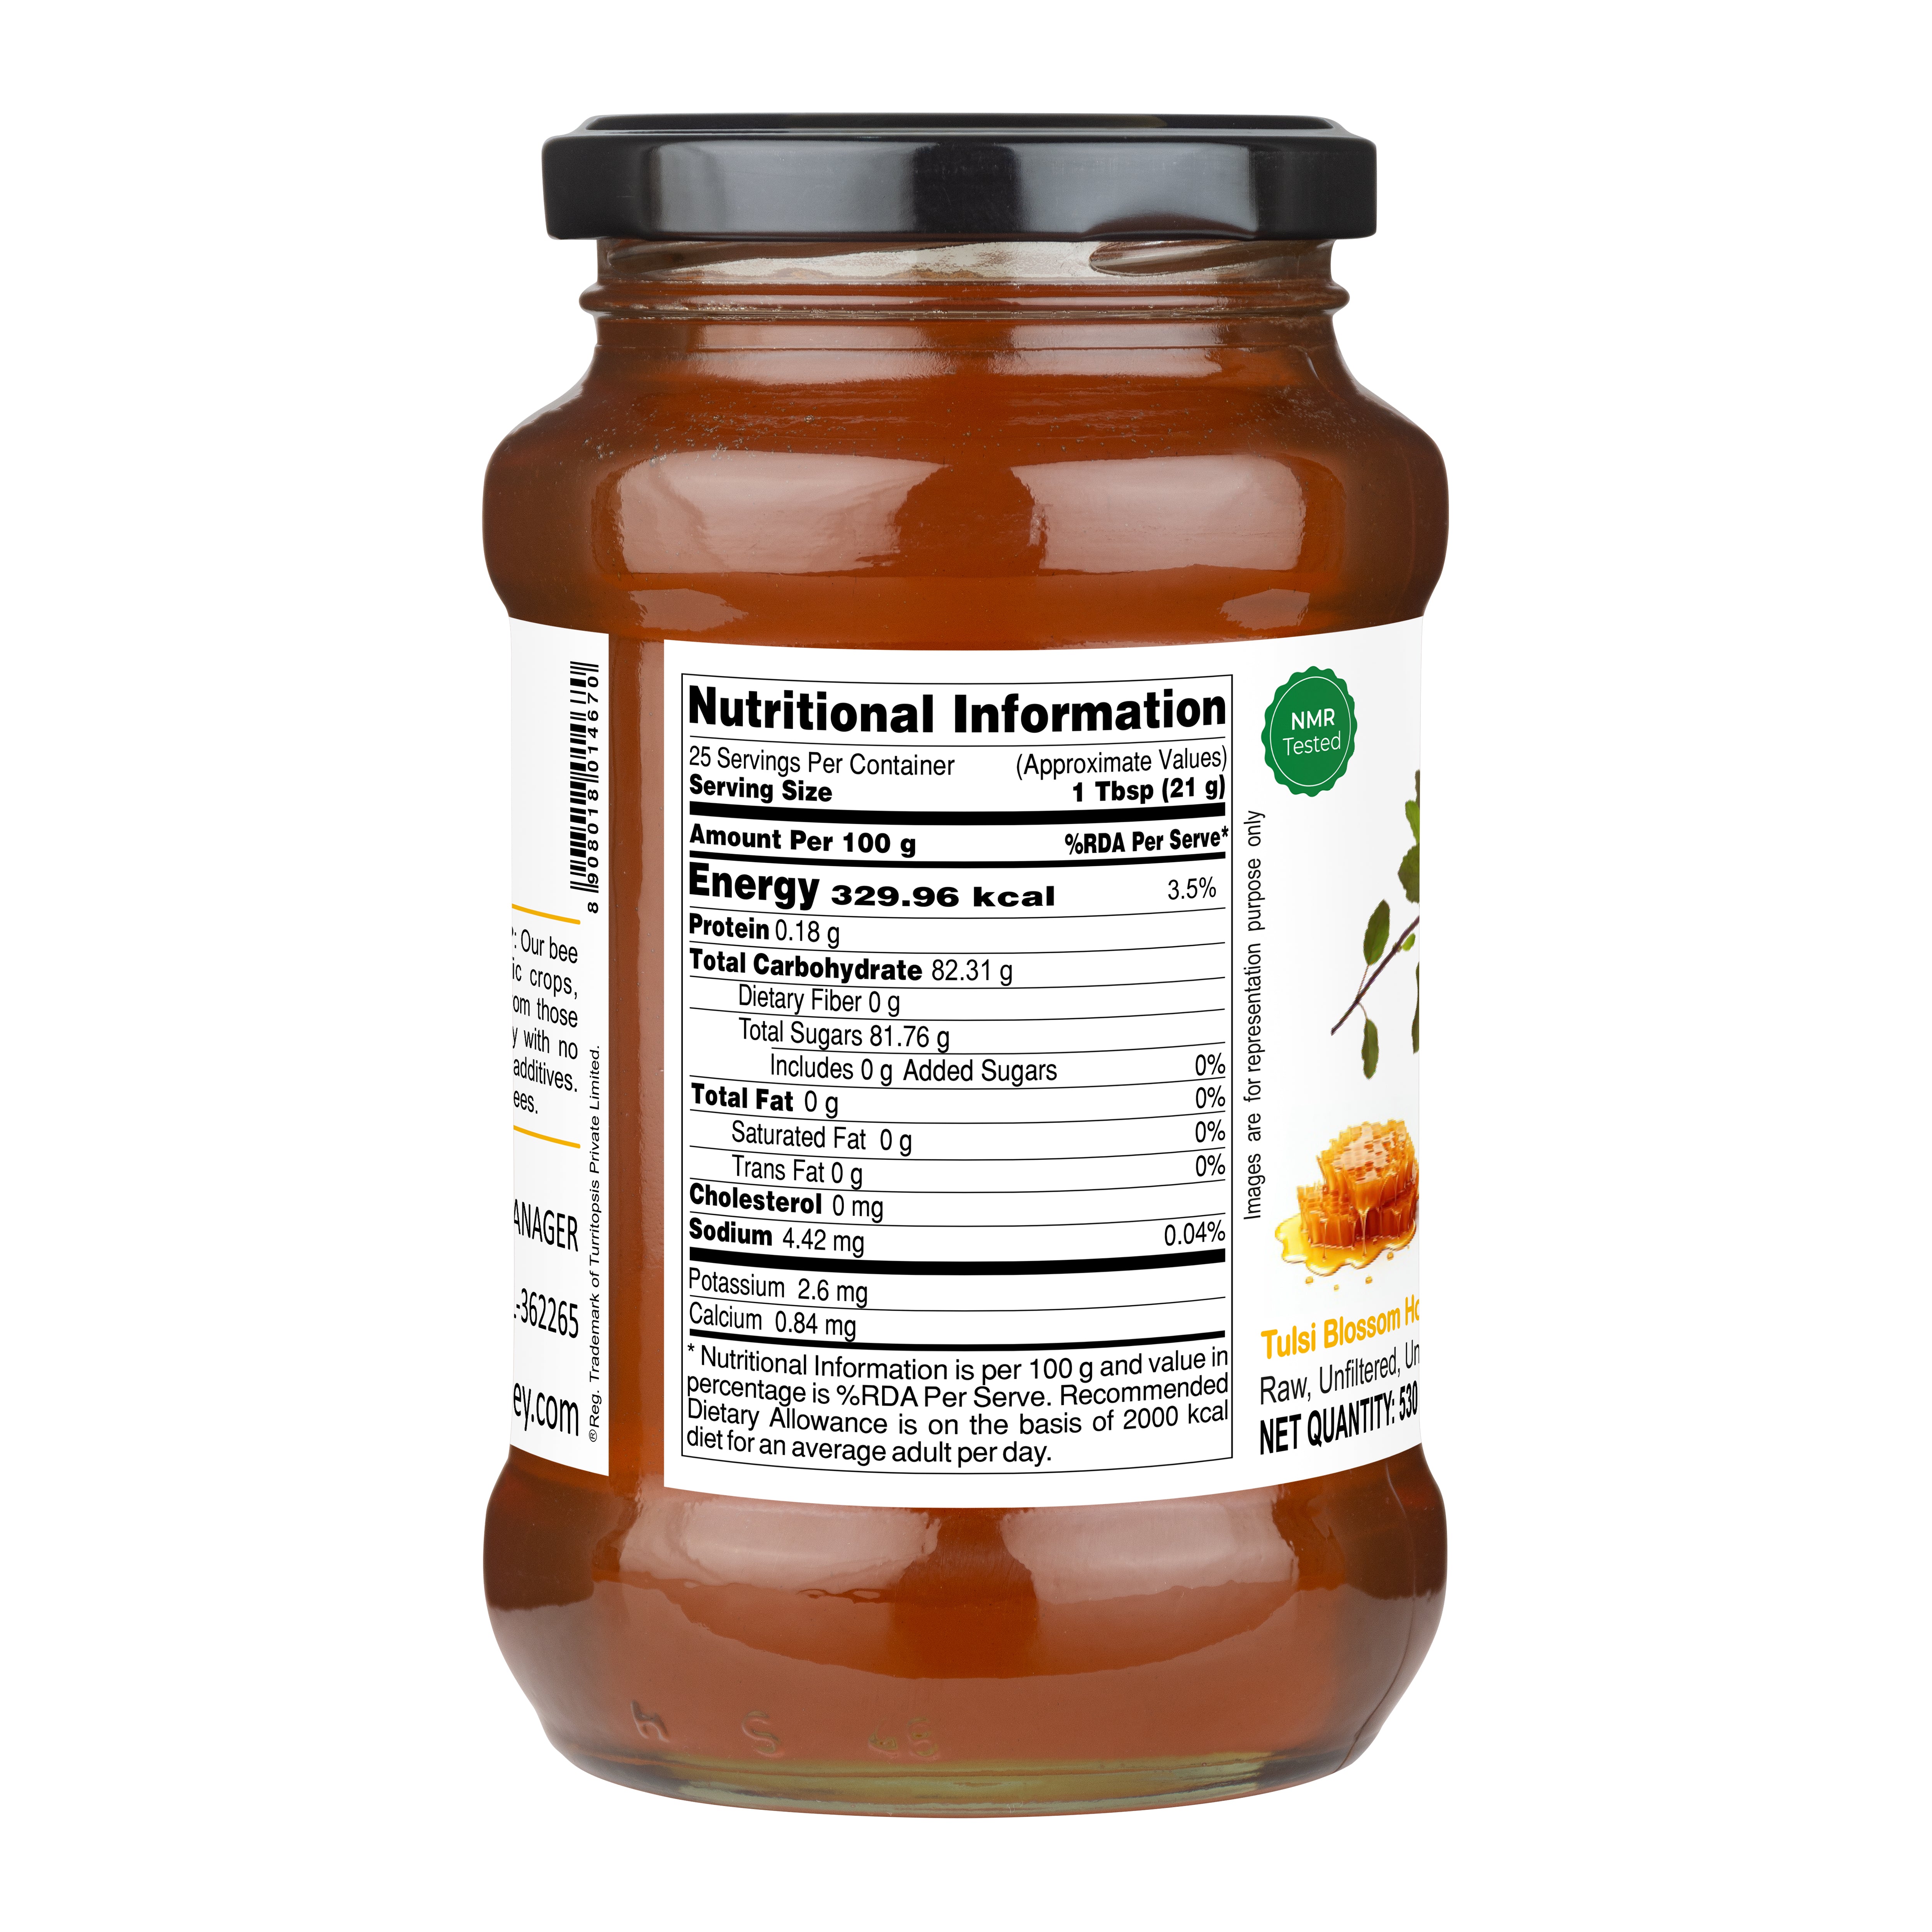 Nutritional Value of Tulsi Honey